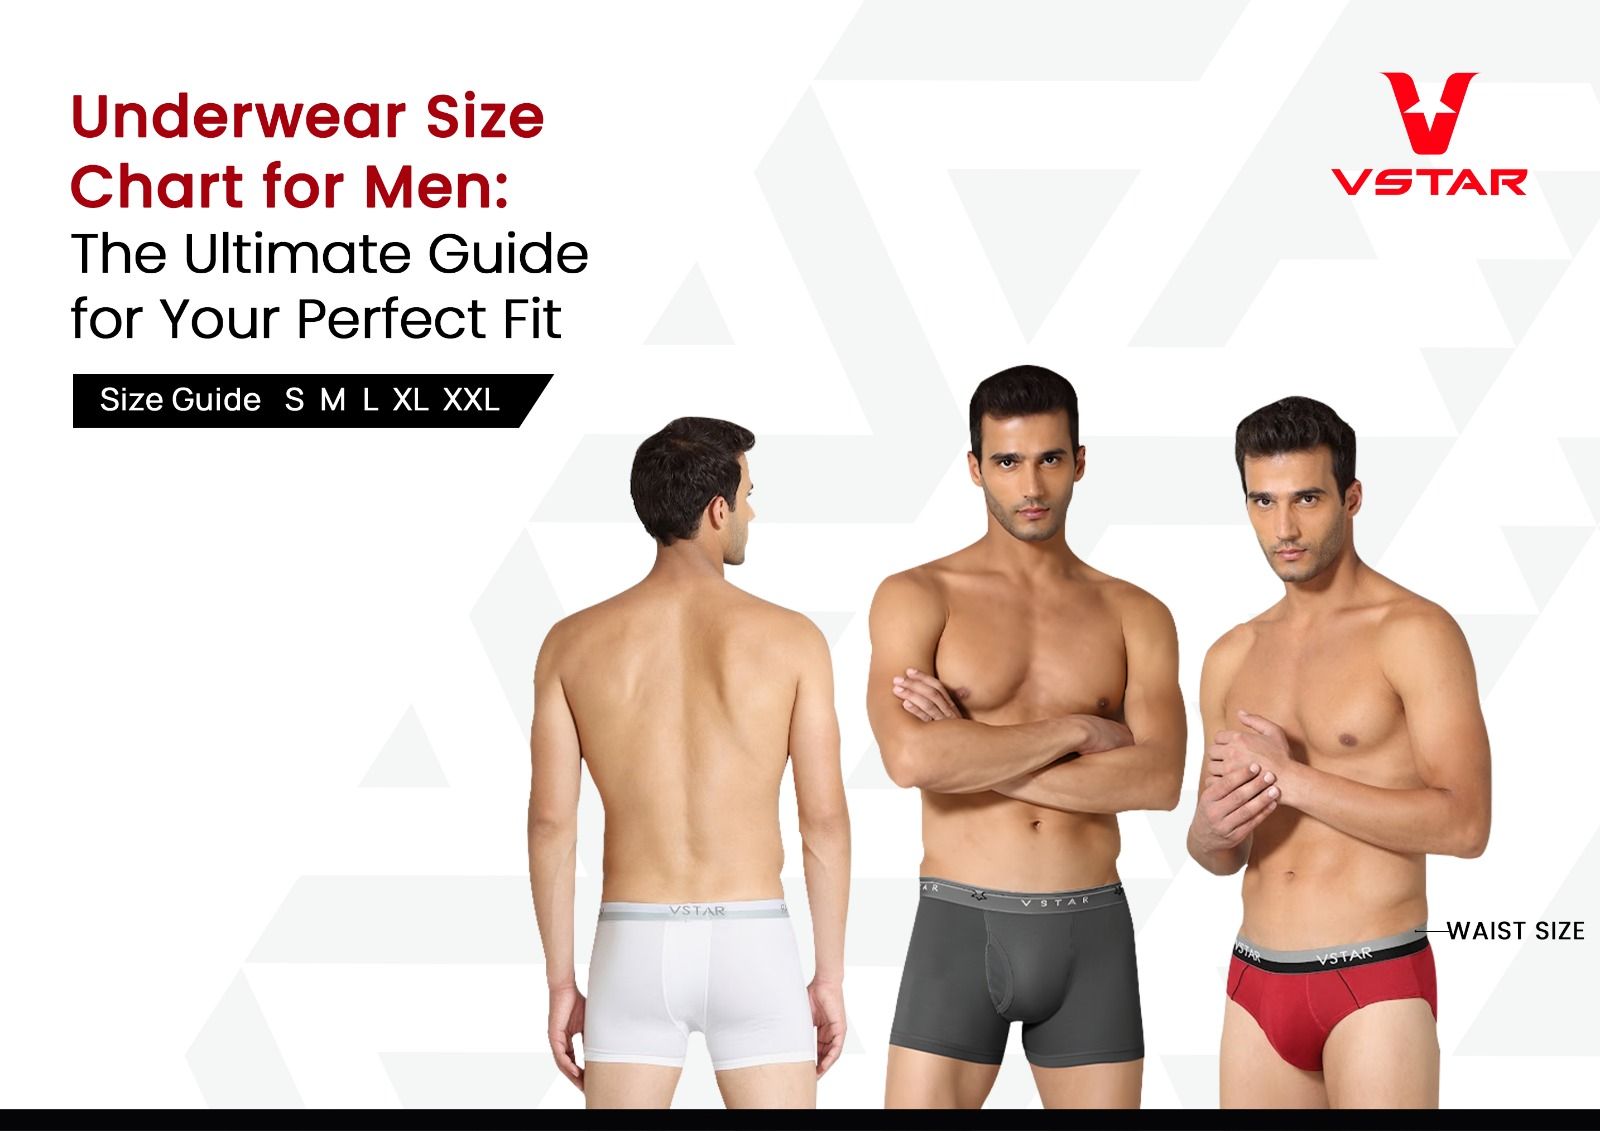 Calvin Klein Underwear Fit Guide